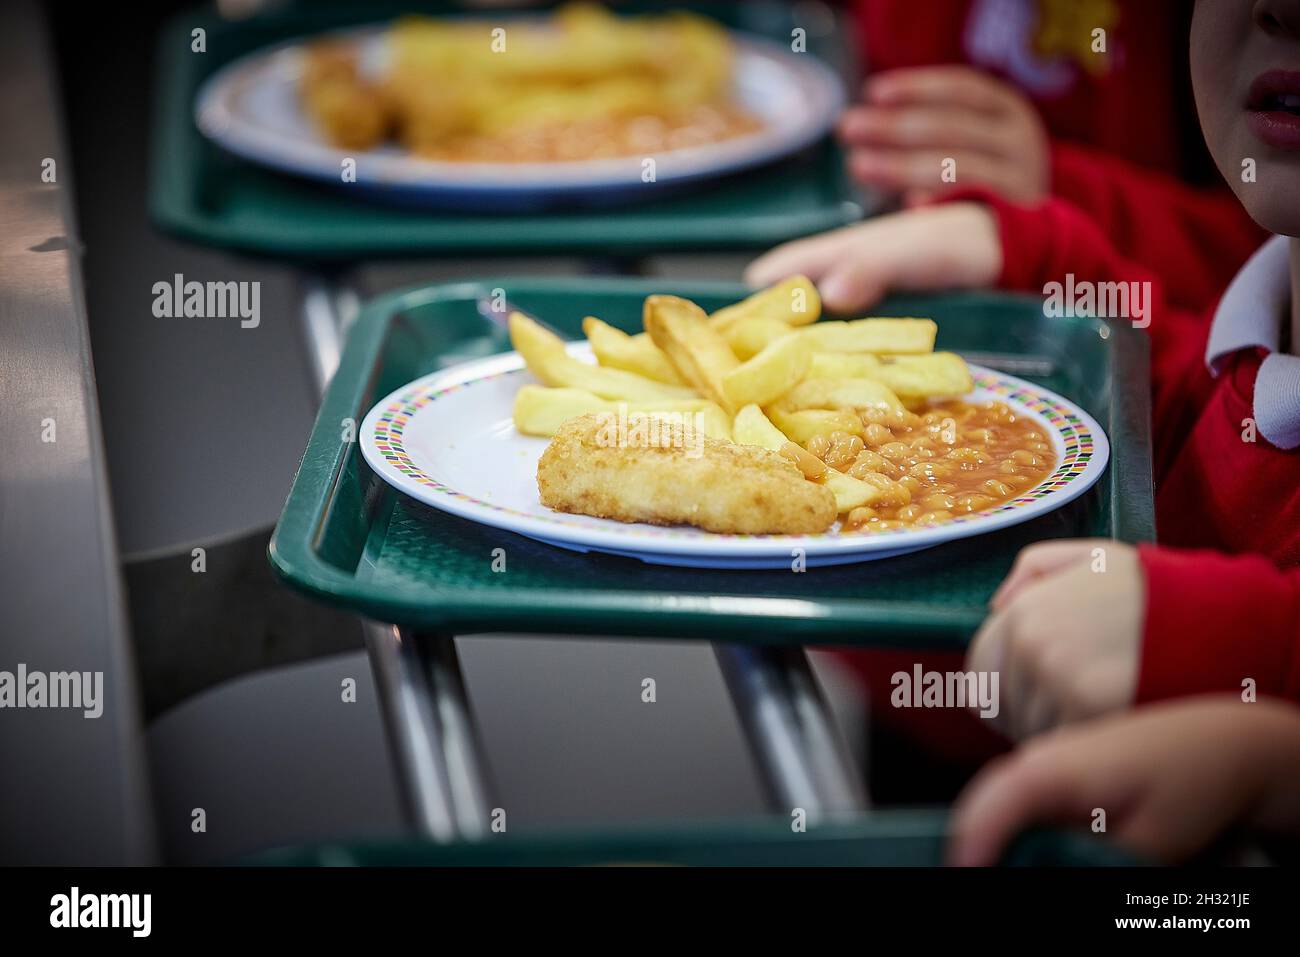 La escuela cena patatas fritas de pescado y frijoles en un plato Foto de stock